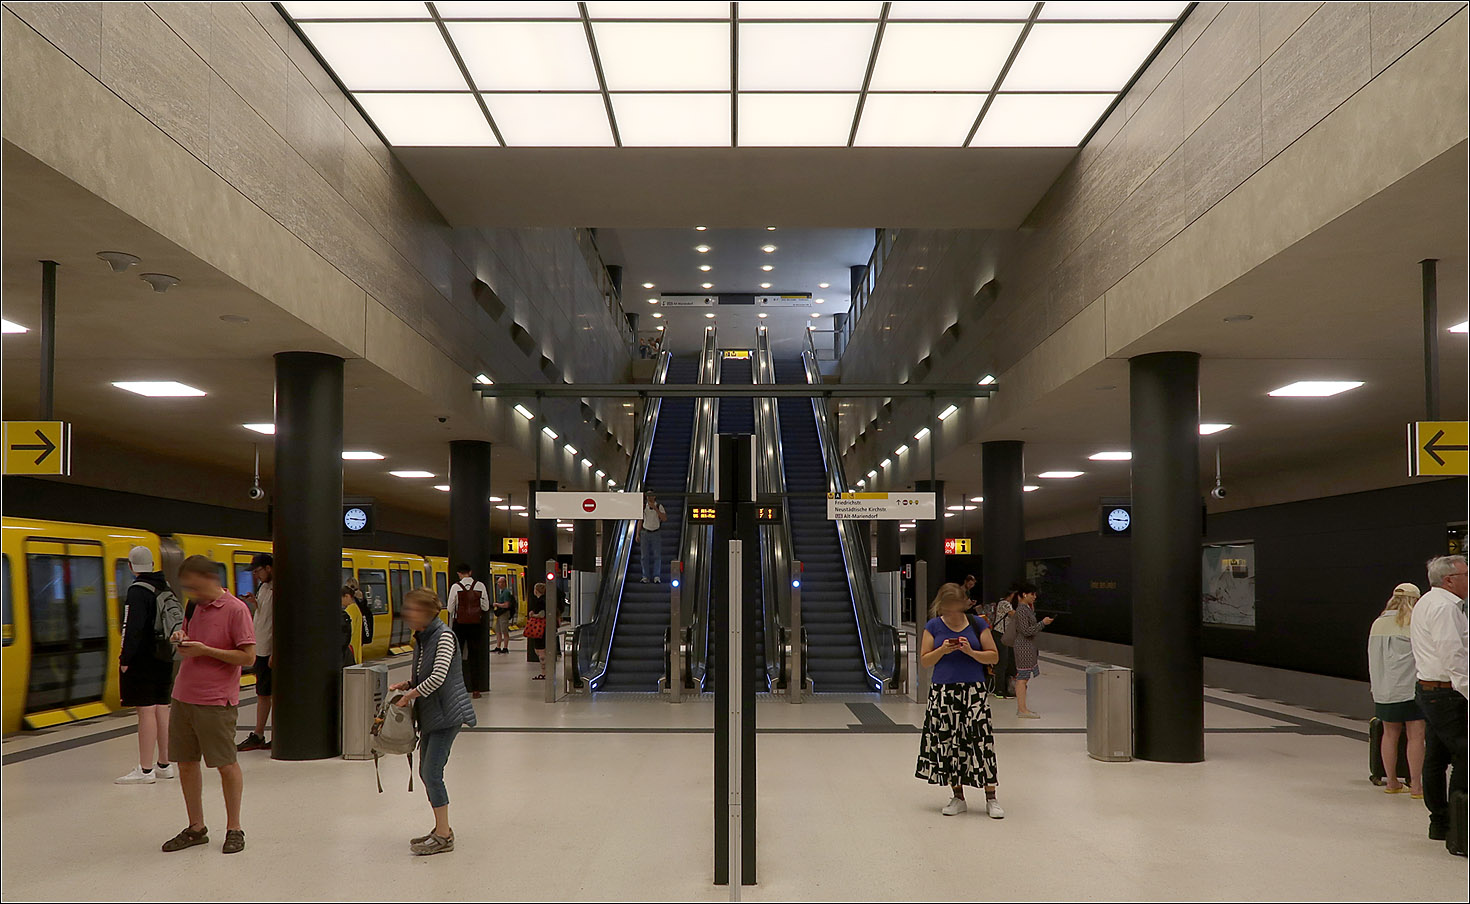 Unter den Linden - Drei neue U-Bahnhöfe für Berlin - 

Blick in die U5-Bahnsteigebene im Bereich unterhalb der U6. Über die Rolltreppen gelangt man hinauf zur U6. 
An der Lichtdecke und den schwarzen Rundstützen kann man eine Ähnlichkeit zur benachbarten Station Brandenburger Tor erkennen, die ebenfalls von Hentschel/Oestreich gestaltet wurde.

13.03.2023 (M)